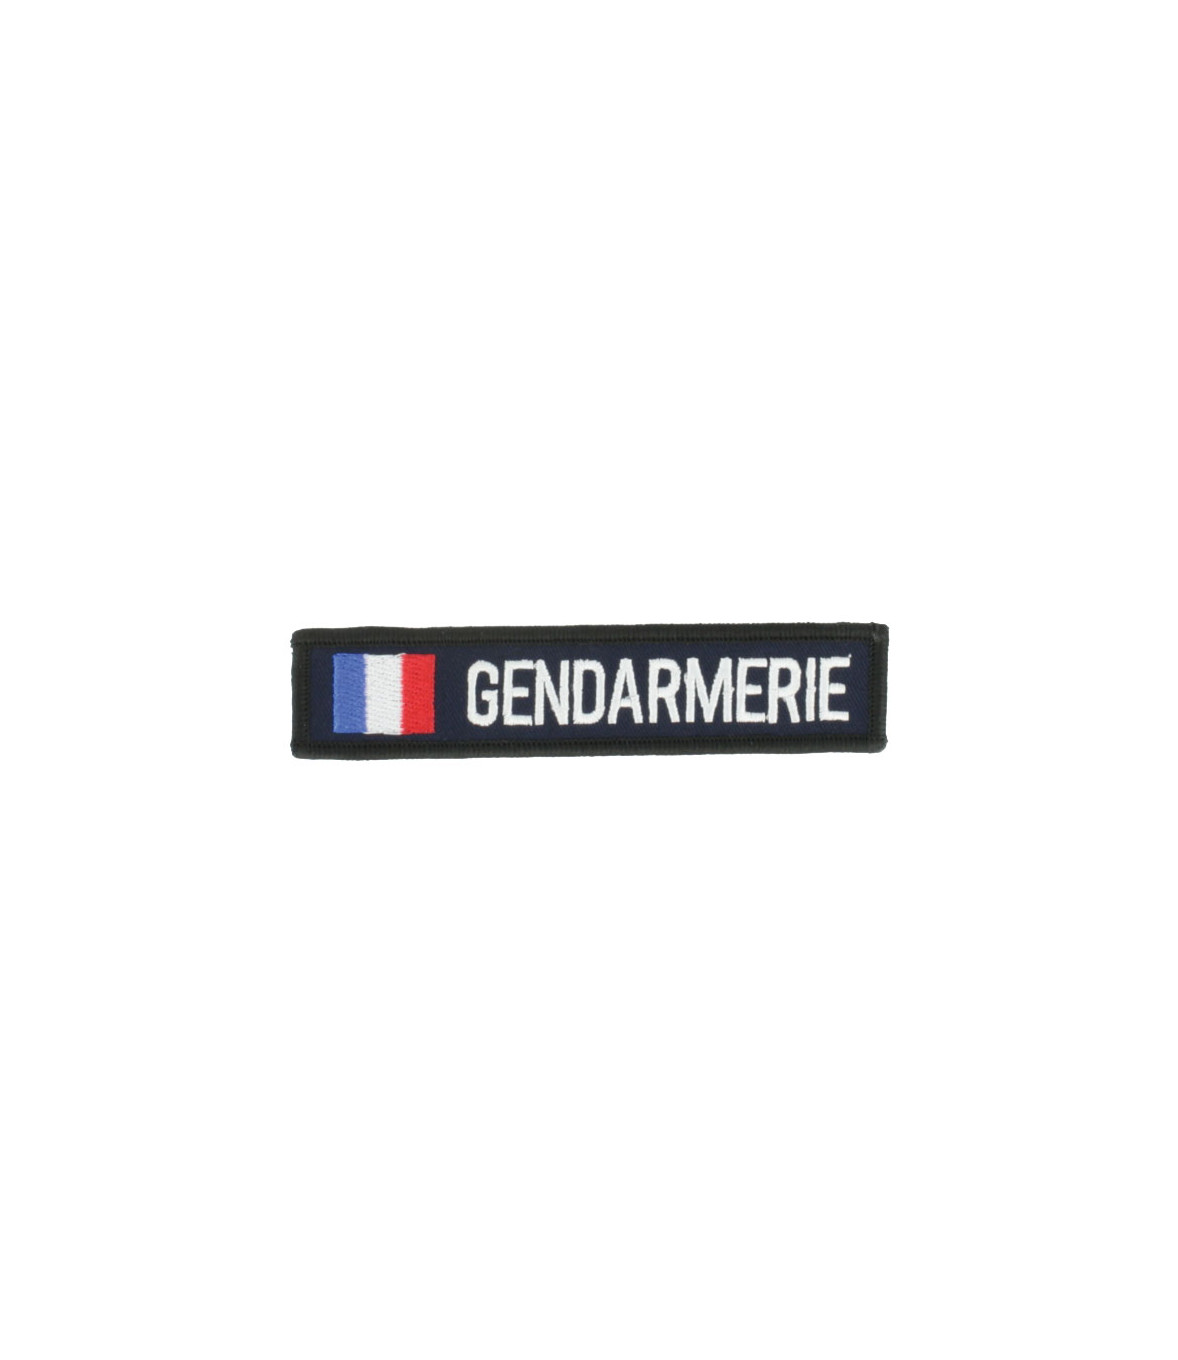 Bande patronymique Gendarmerie retroreflechissante France